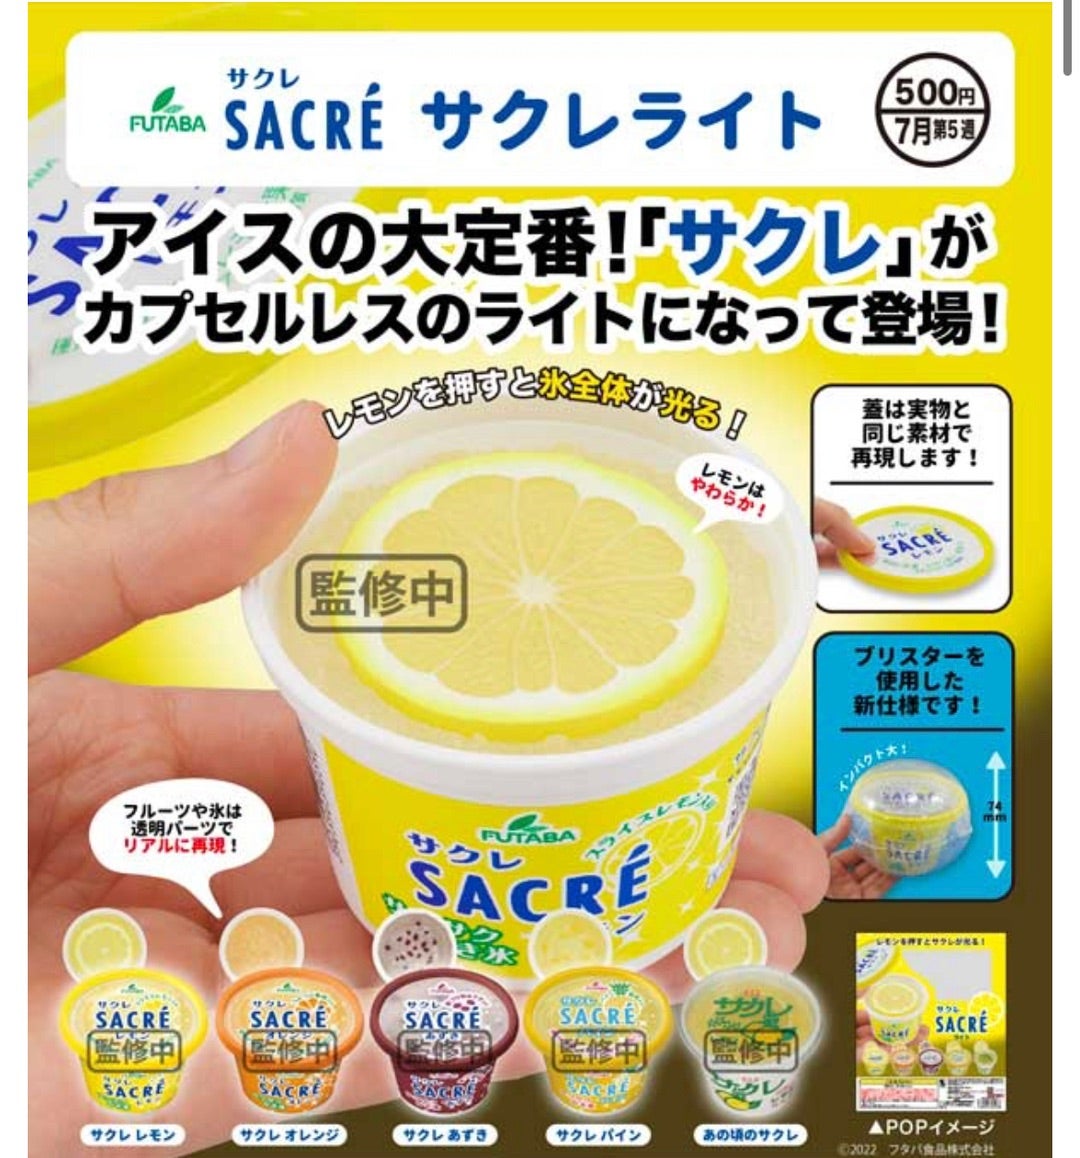 売却 SACRE サクレ ガチャ ライト レモン あずき